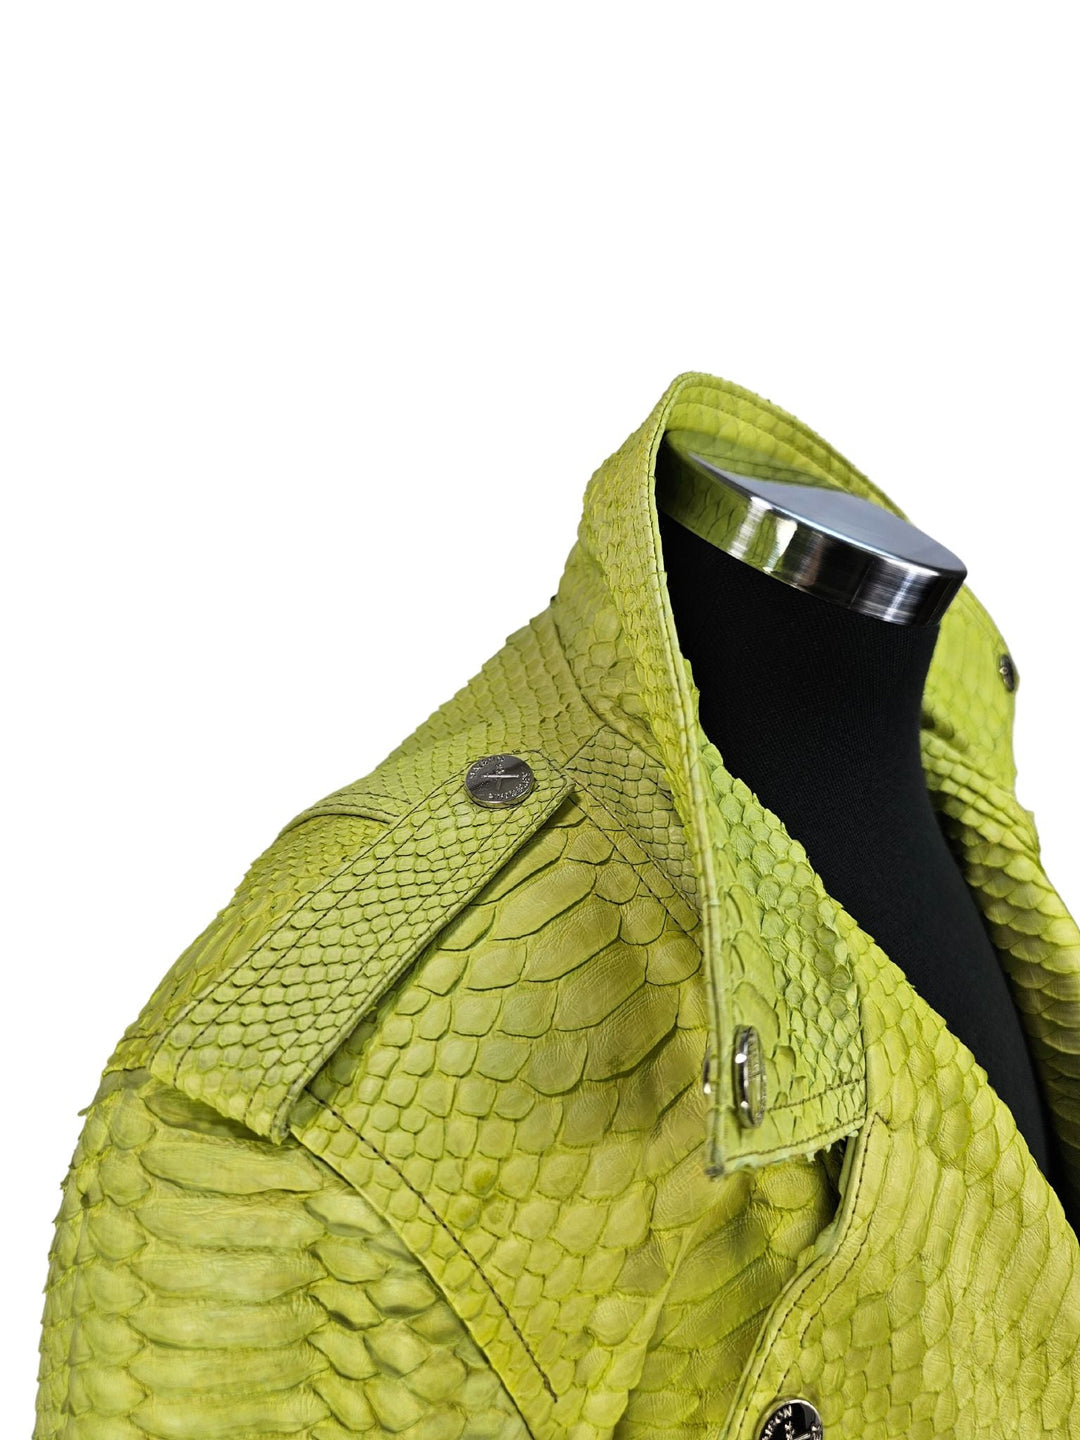 Women's Mejor Cropped Lime Green Python Biker Jacket